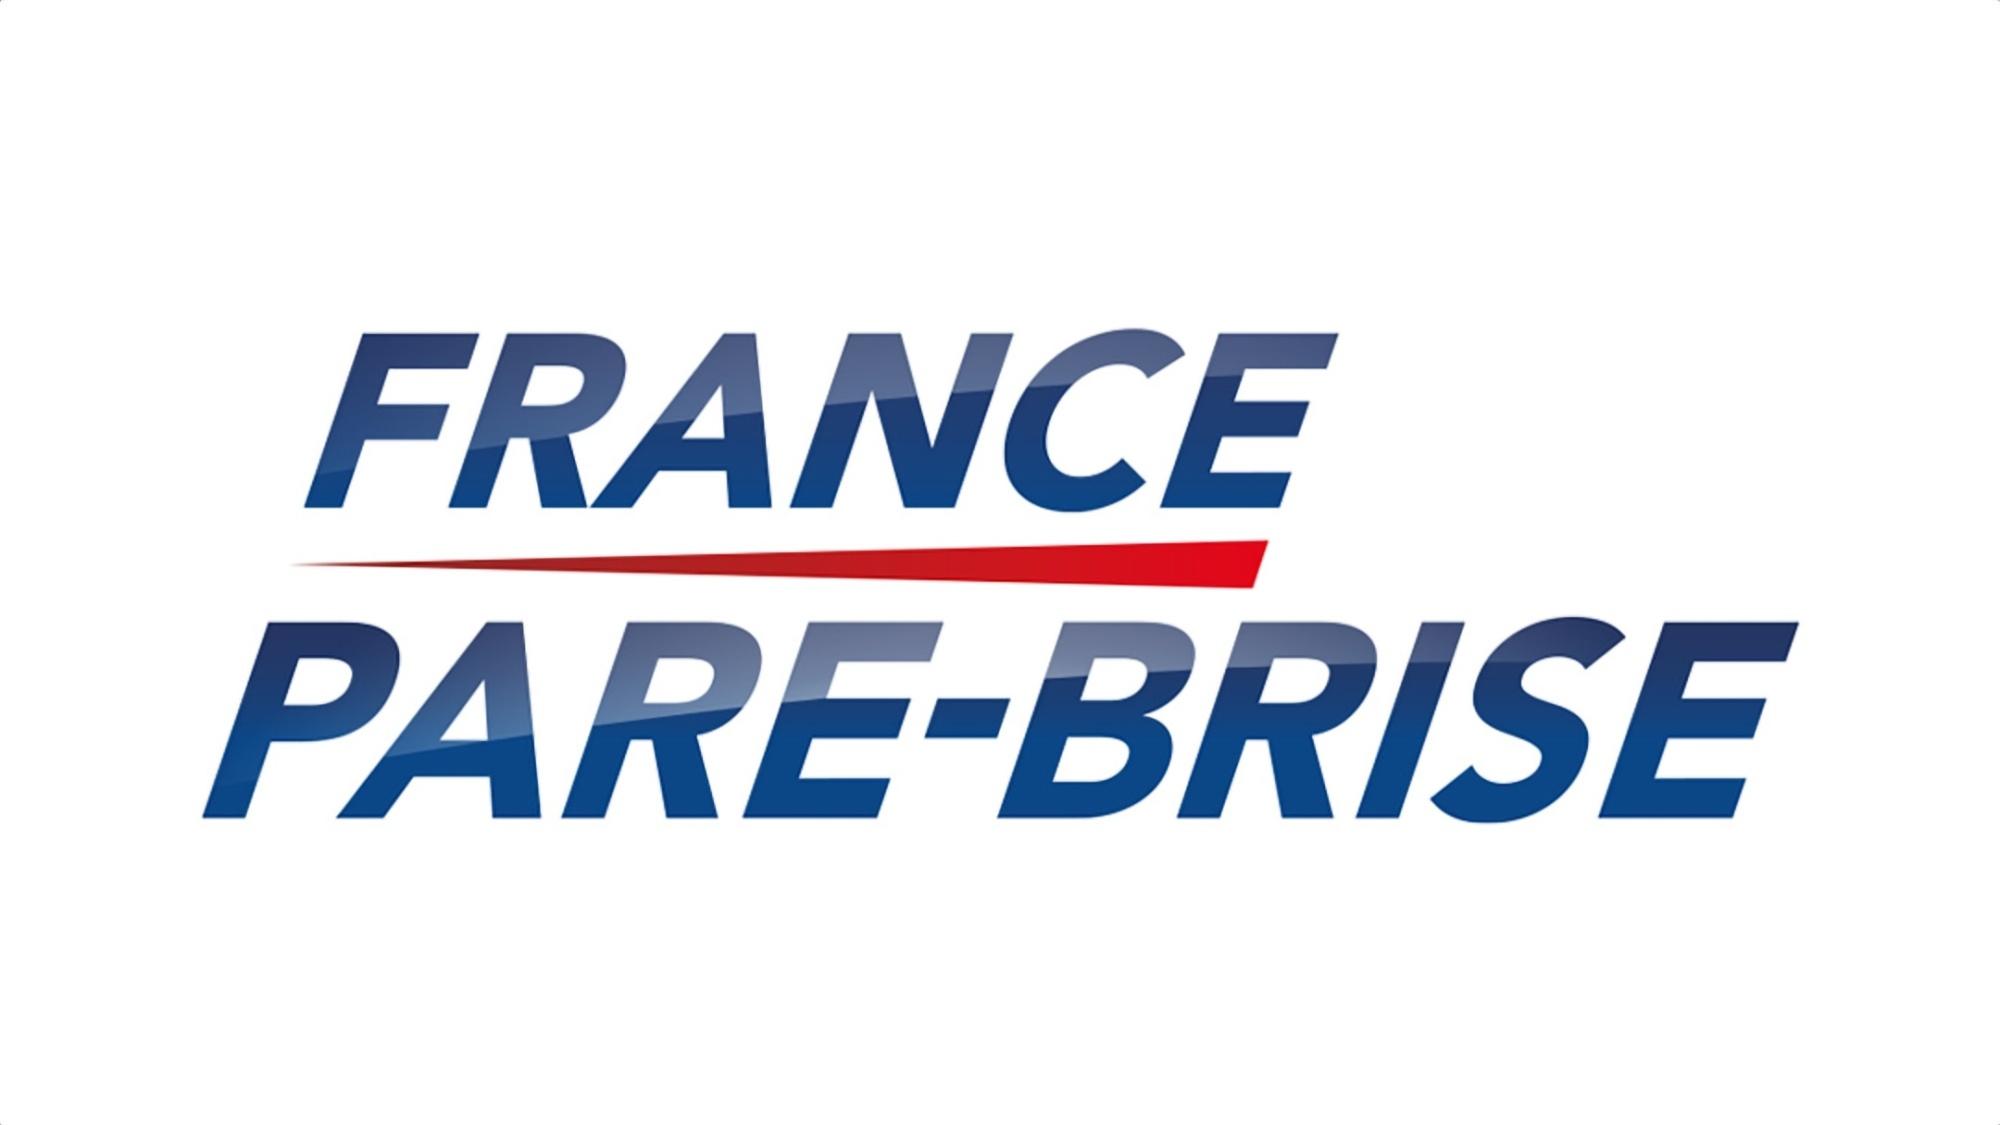 France Pare-brise Calais